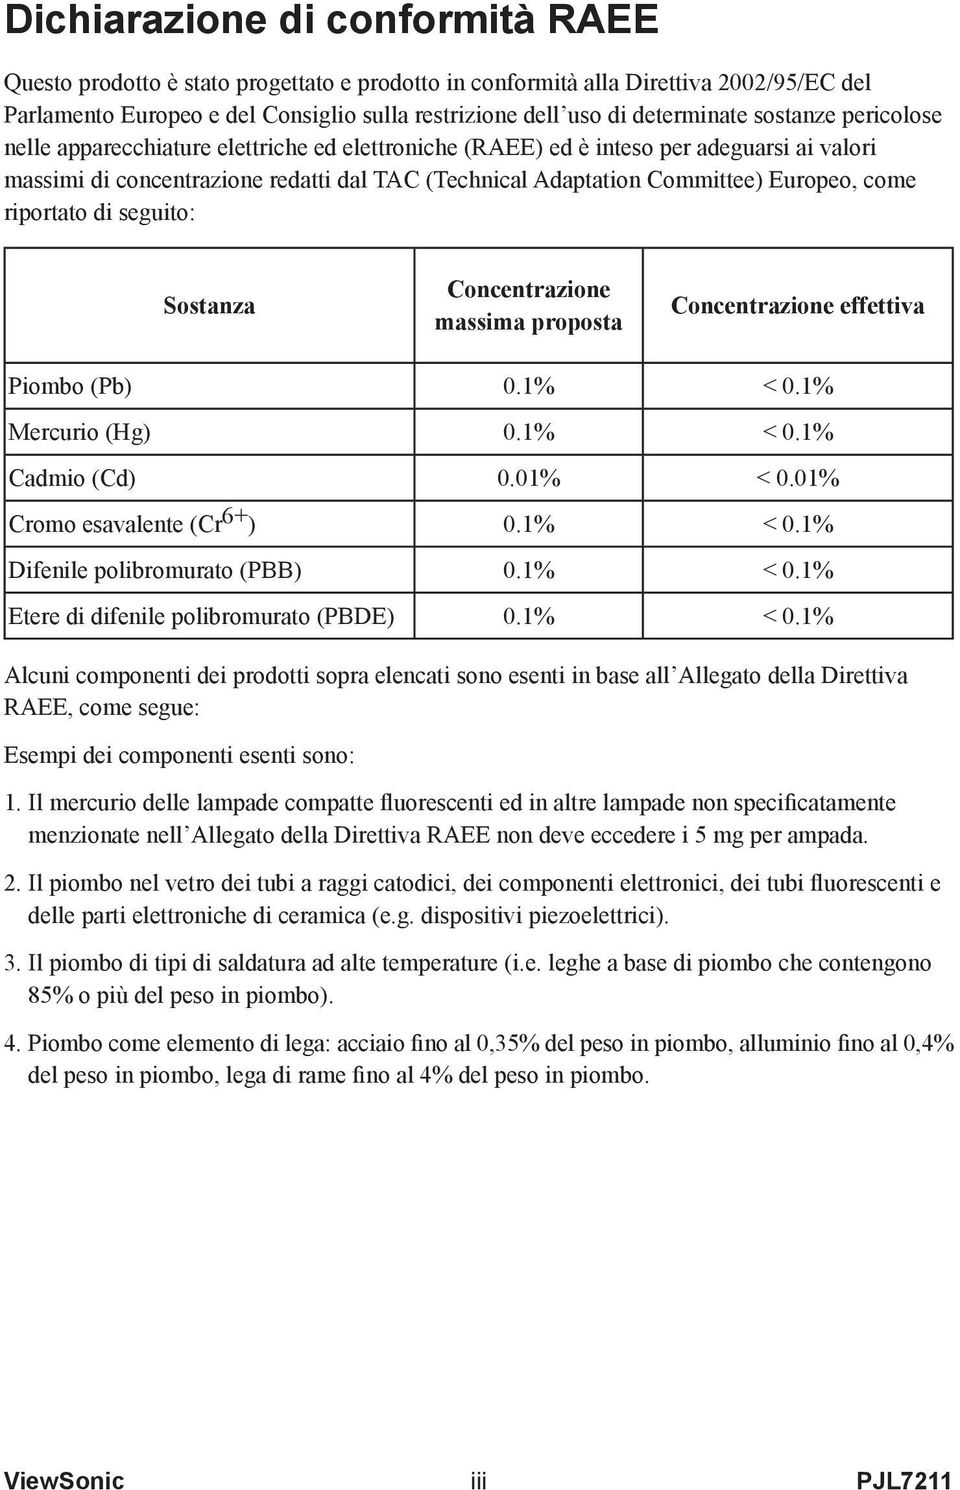 come riportato di seguito: Sostanza Concentrazione massima proposta Concentrazione effettiva Piombo (Pb) 0.1% < 0.1% Mercurio (Hg) 0.1% < 0.1% Cadmio (Cd) 0.01% < 0.01% Cromo esavalente (Cr 6+ ) 0.